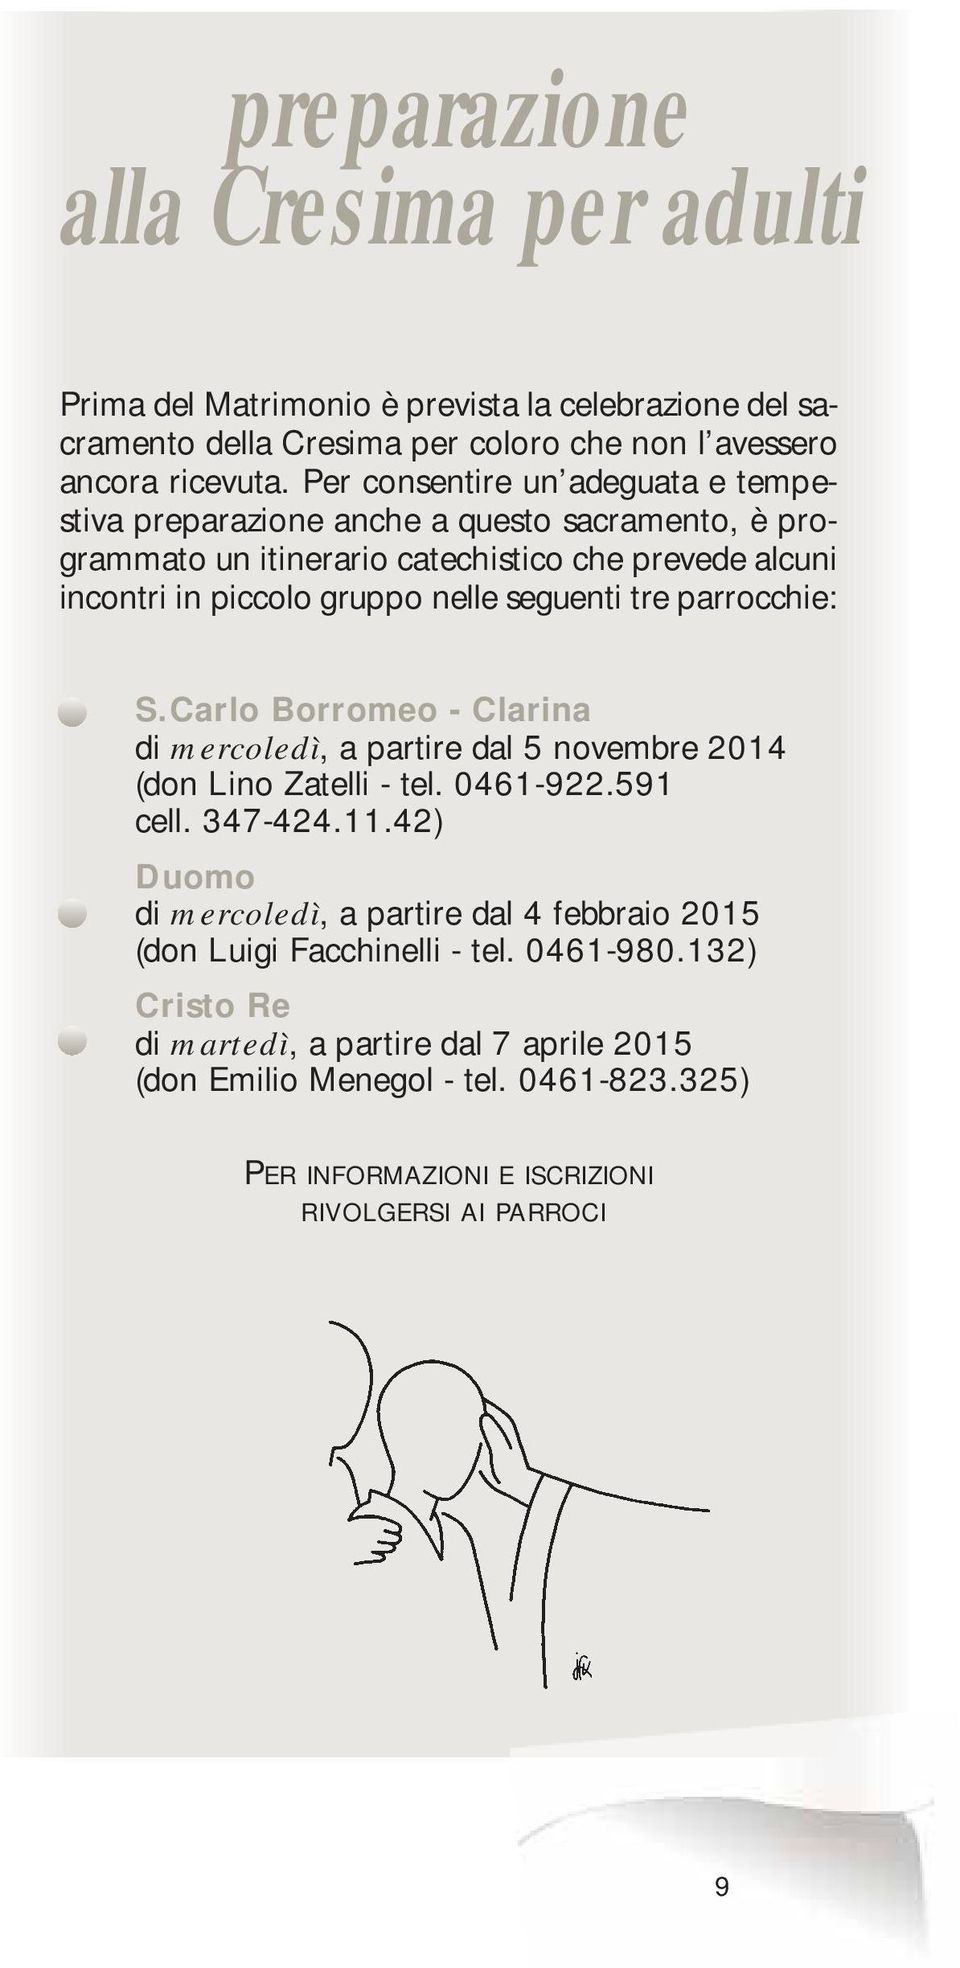 tre parrocchie: S.Carlo Borromeo - Clarina di mercoledì, a partire dal 5 novembre 2014 (don Lino Zatelli - tel. 0461-922.591 cell. 347-424.11.